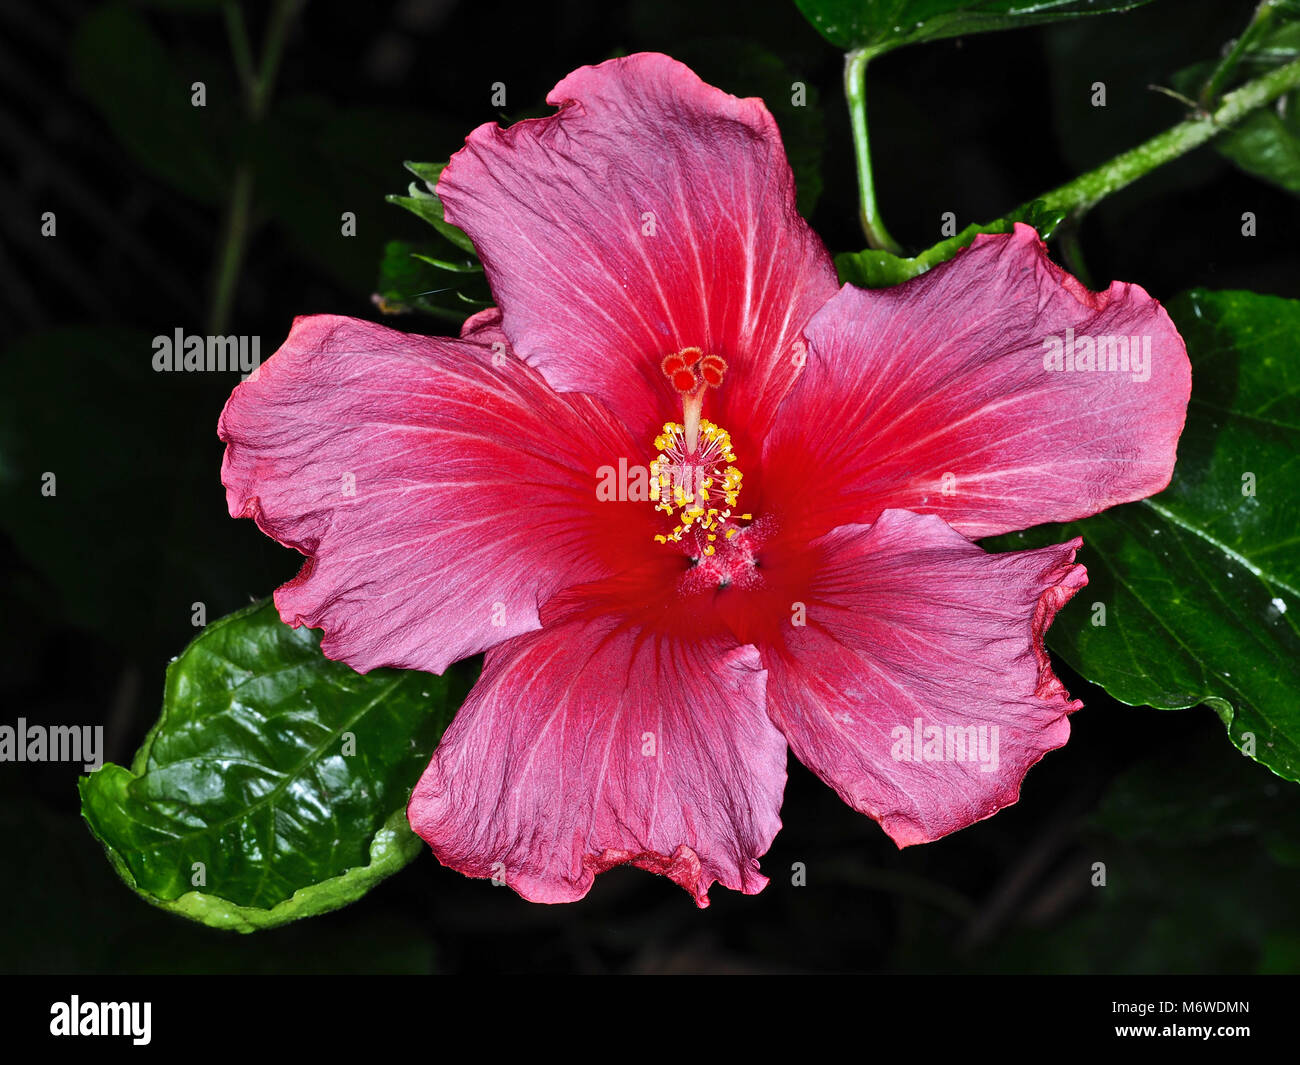 Schöne Hibiscus rosa-sinensis (umgangssprachlich als Chinesische Hibiskus, Hawaiian Hibiscus bekannt, China Rose, rose Mallow) Blume Nahaufnahme Stockfoto